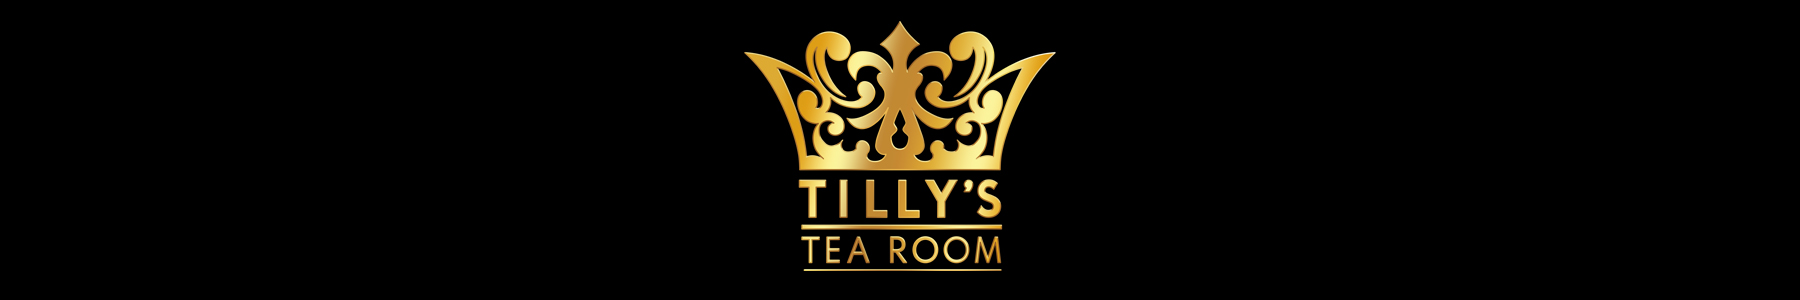 Tilly's Tea Room Logo Banner